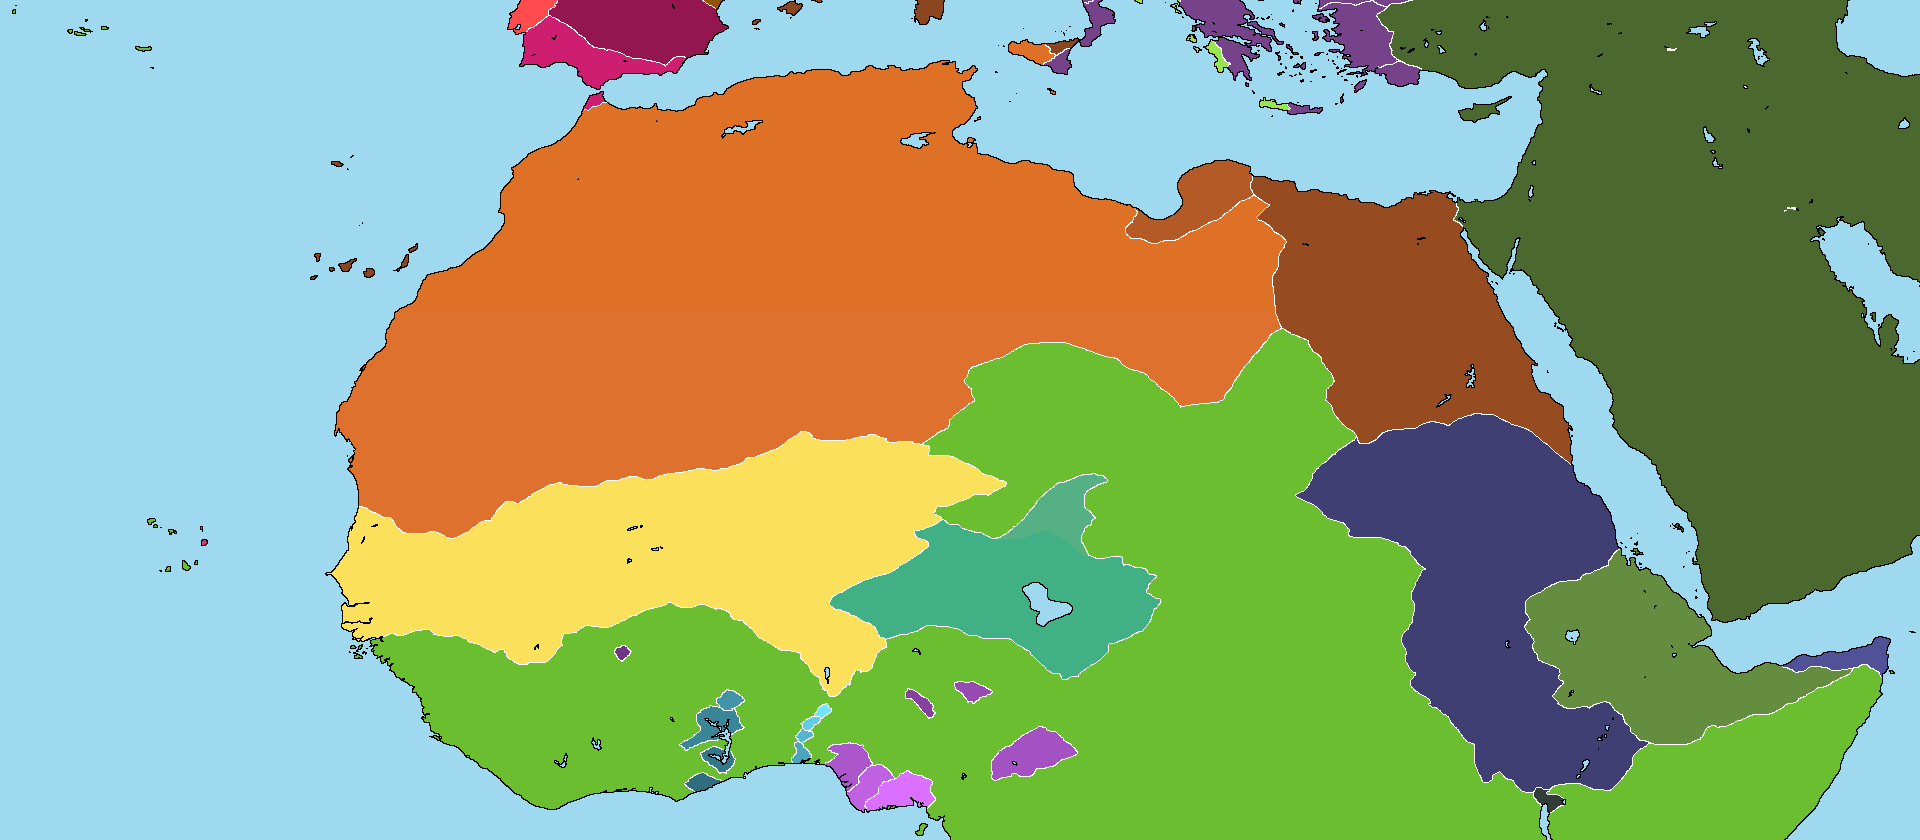 North Africa 1500